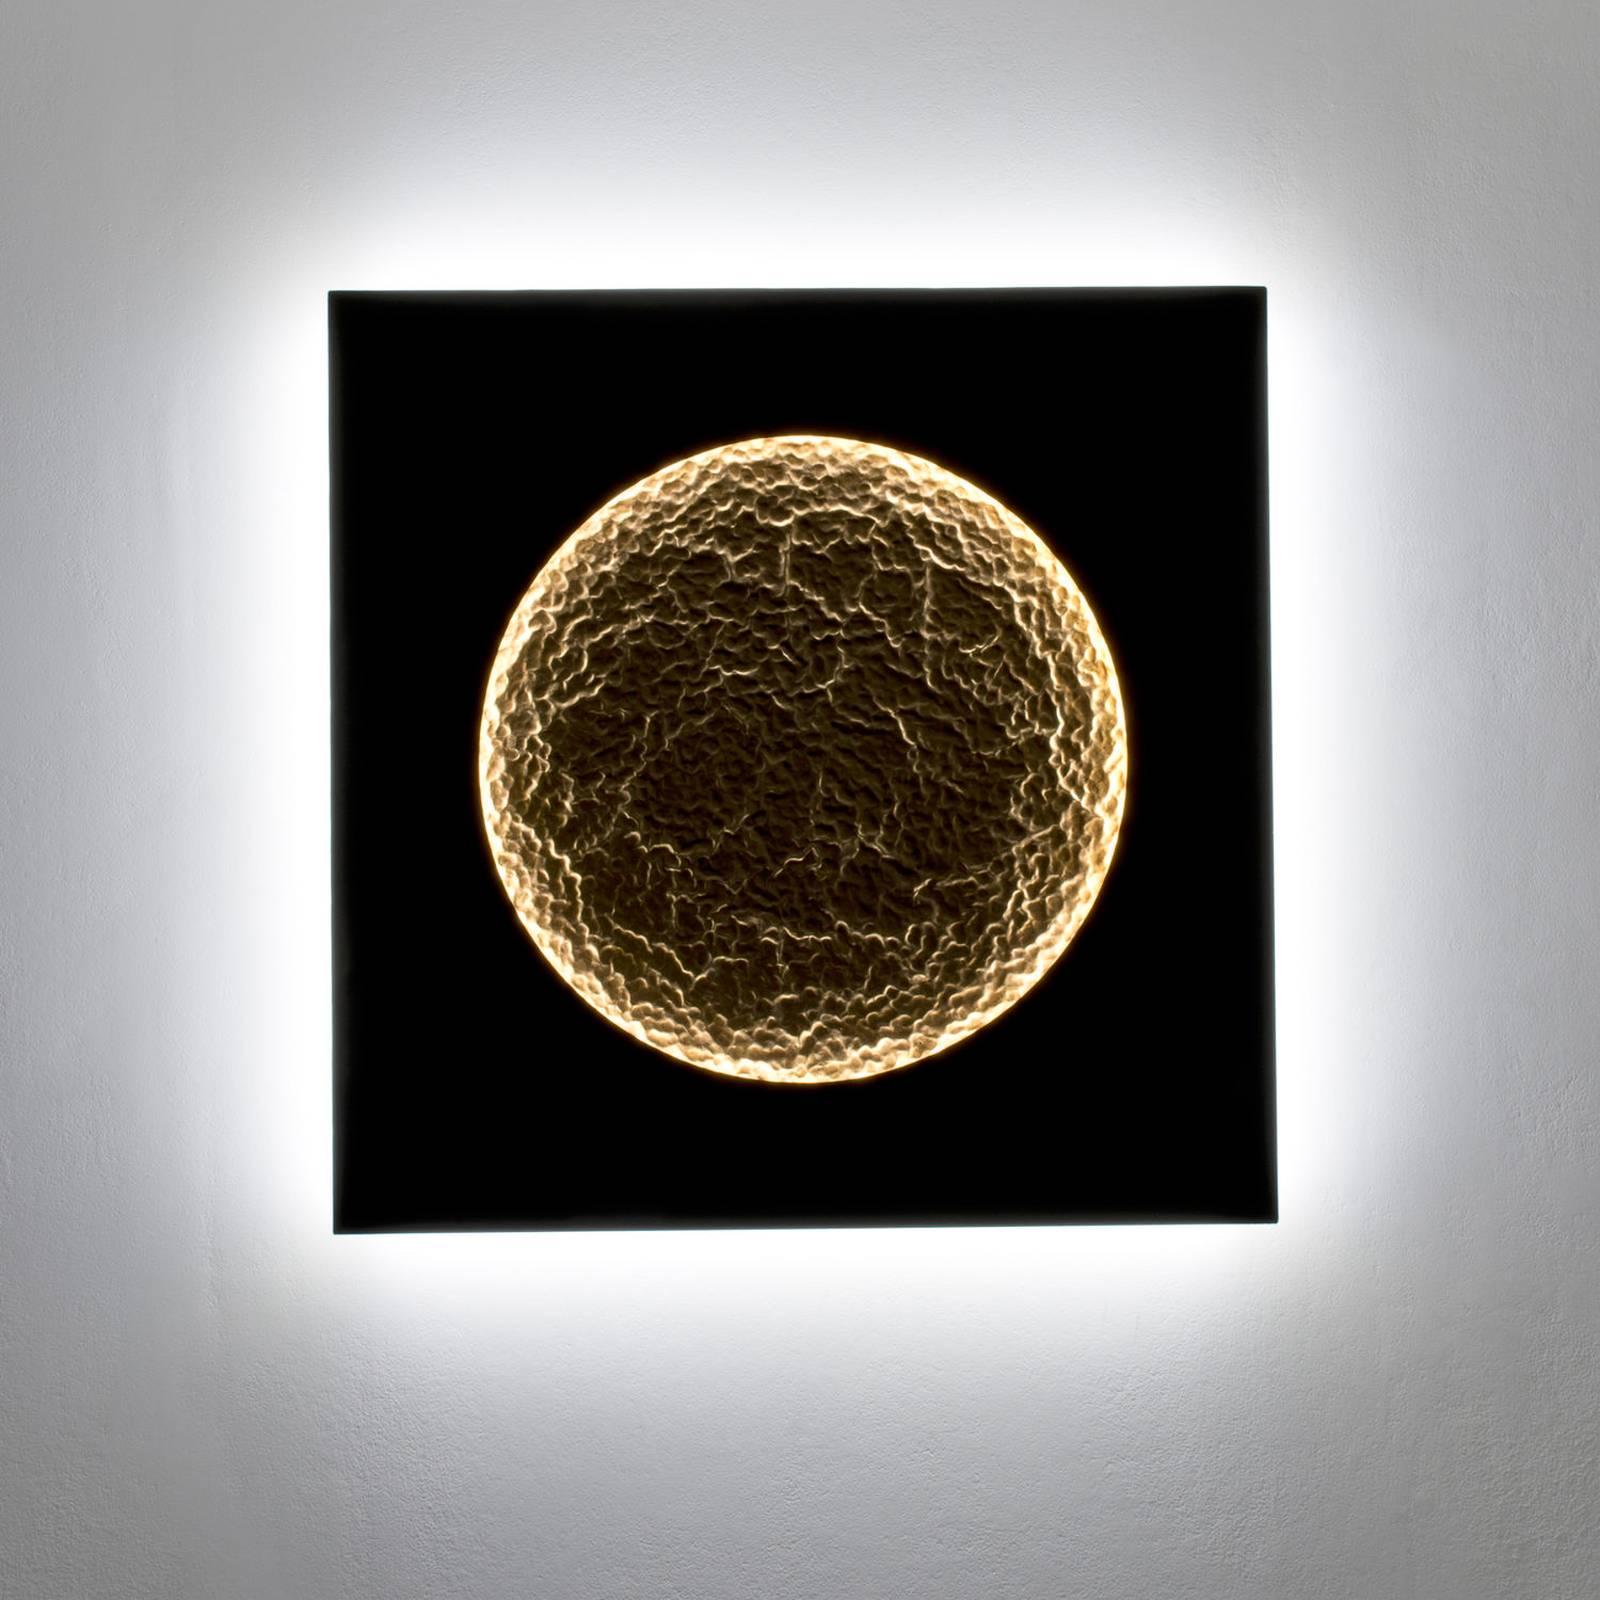 Holländer plenilunio led fali lámpa, barna/arany színű, szélesség 100 cm